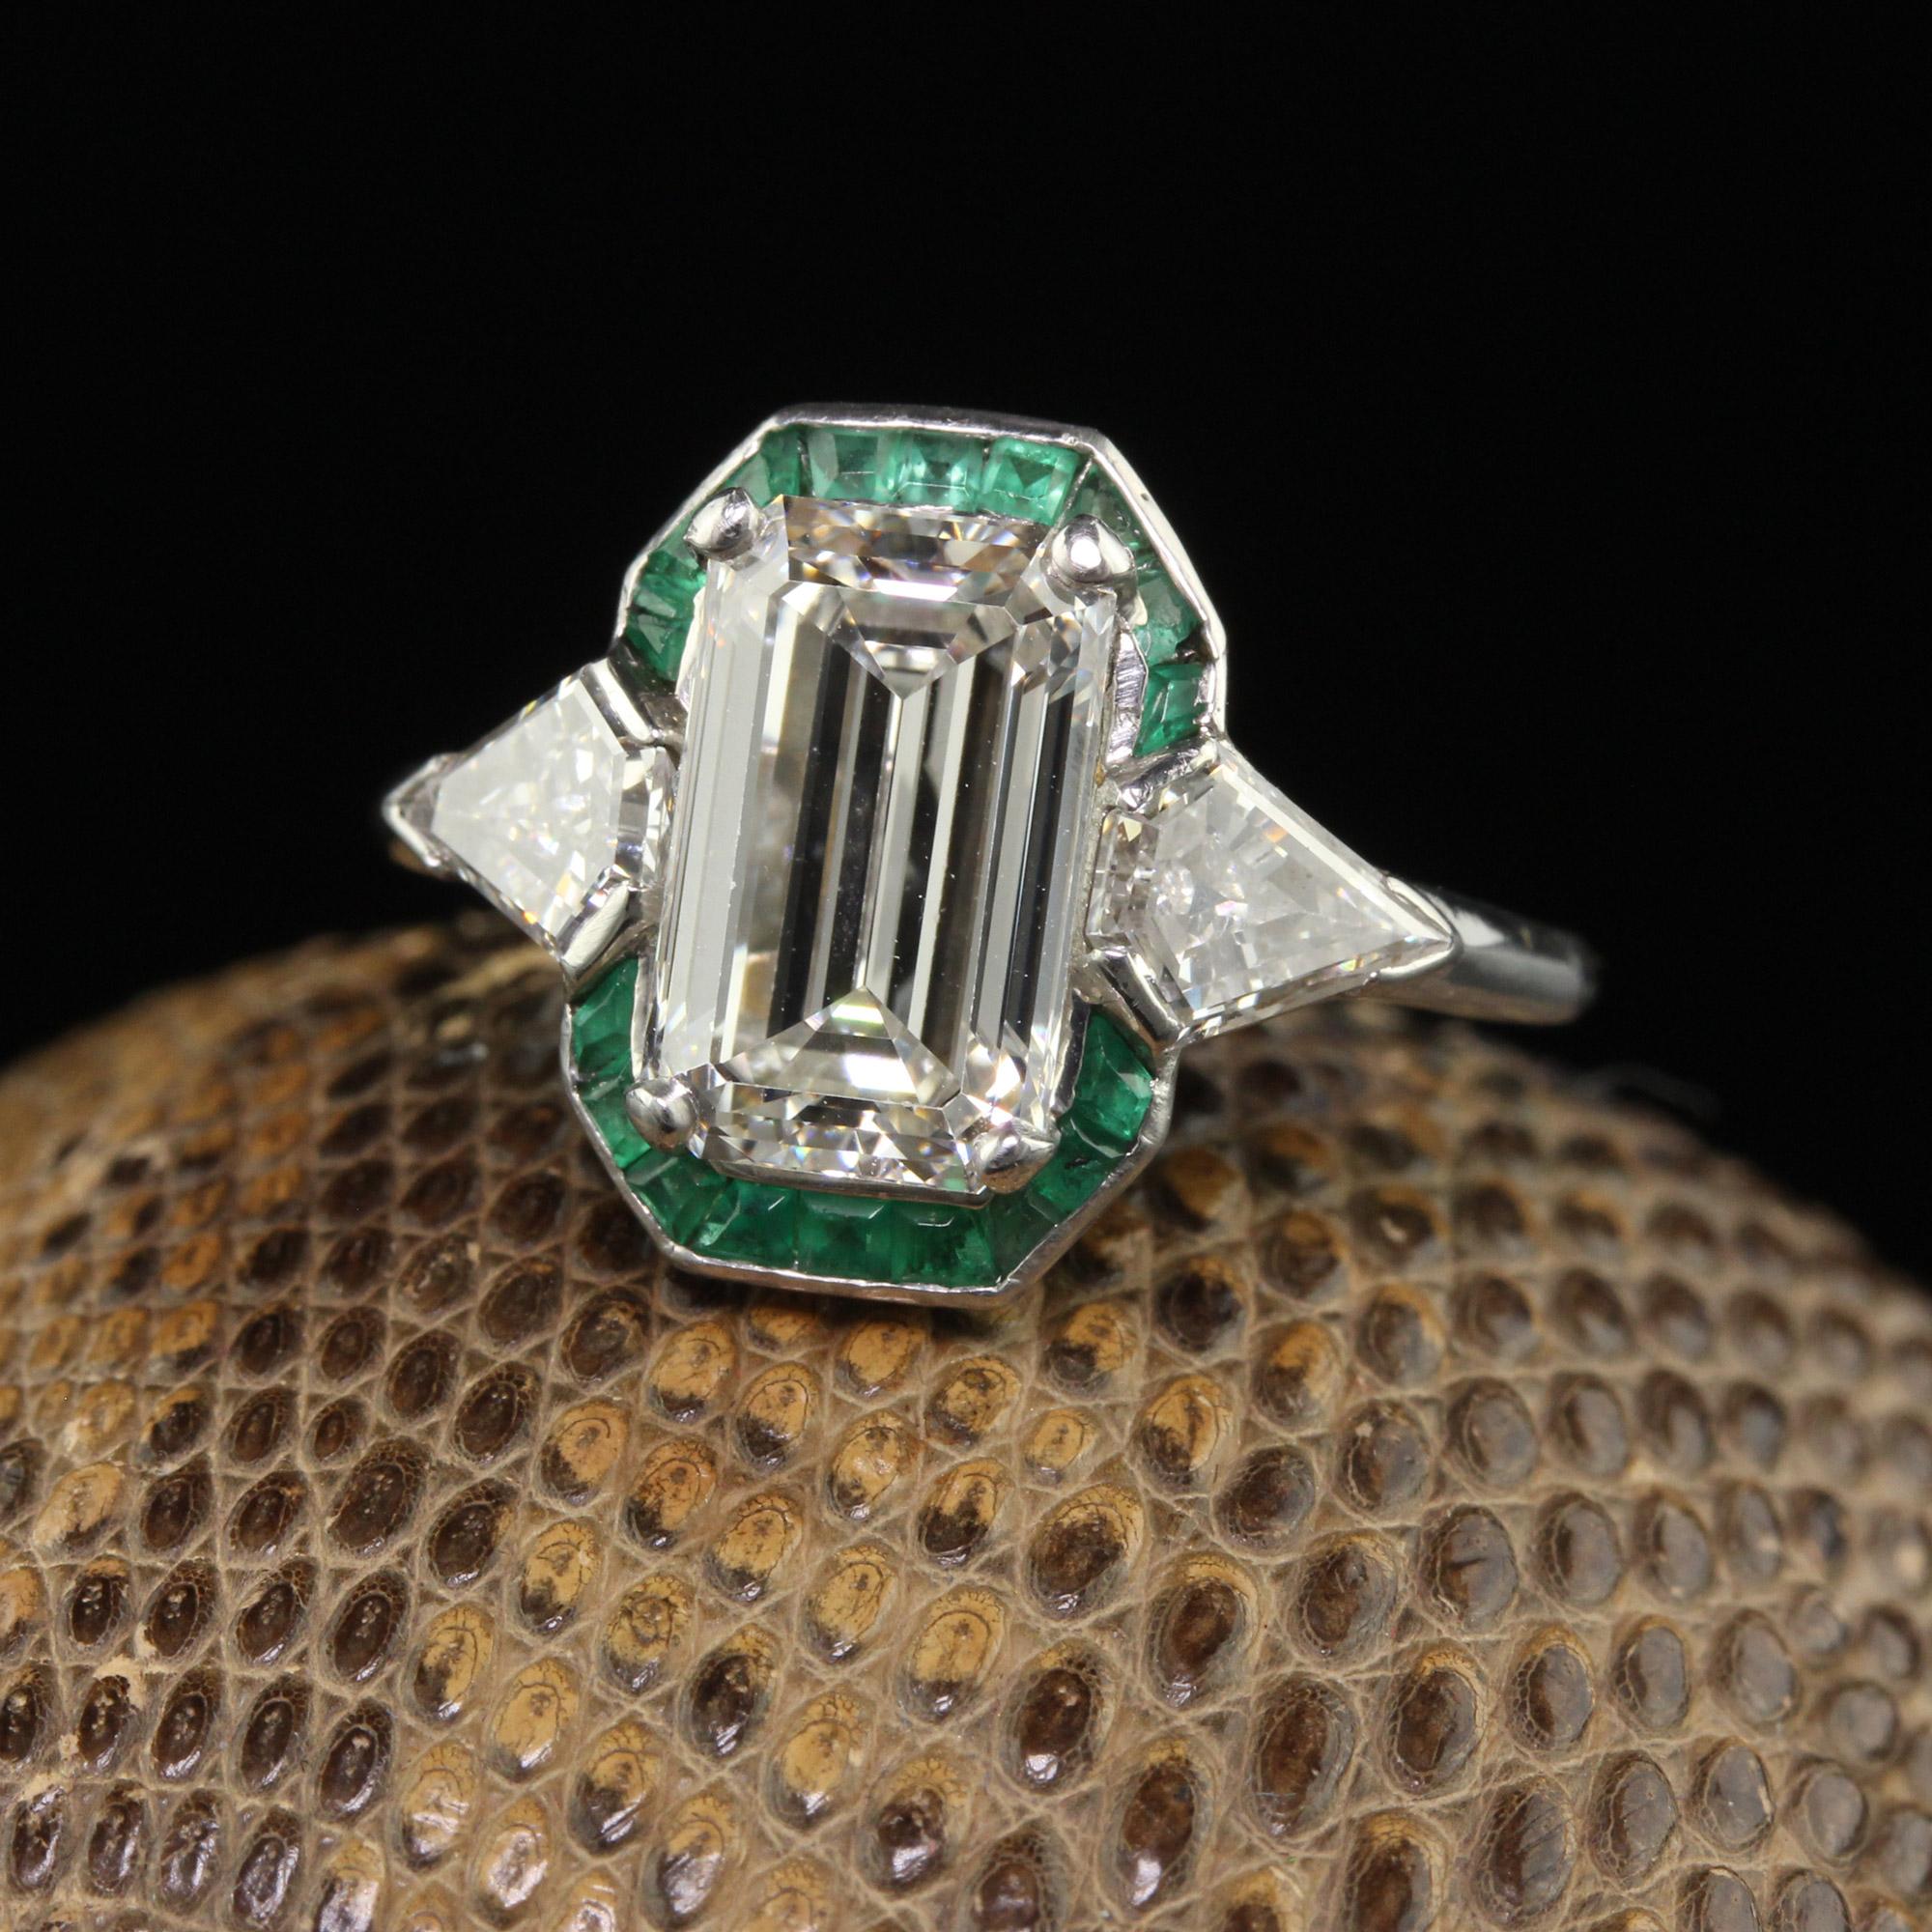 Magnifique bague de fiançailles Arte Antiques Platinum Emerald Cut Diamond Emerald Halo - GIA. Cette incroyable bague de fiançailles est réalisée en platine. Le centre contient un diamant de taille émeraude qui a fait l'objet d'un rapport GIA. Les